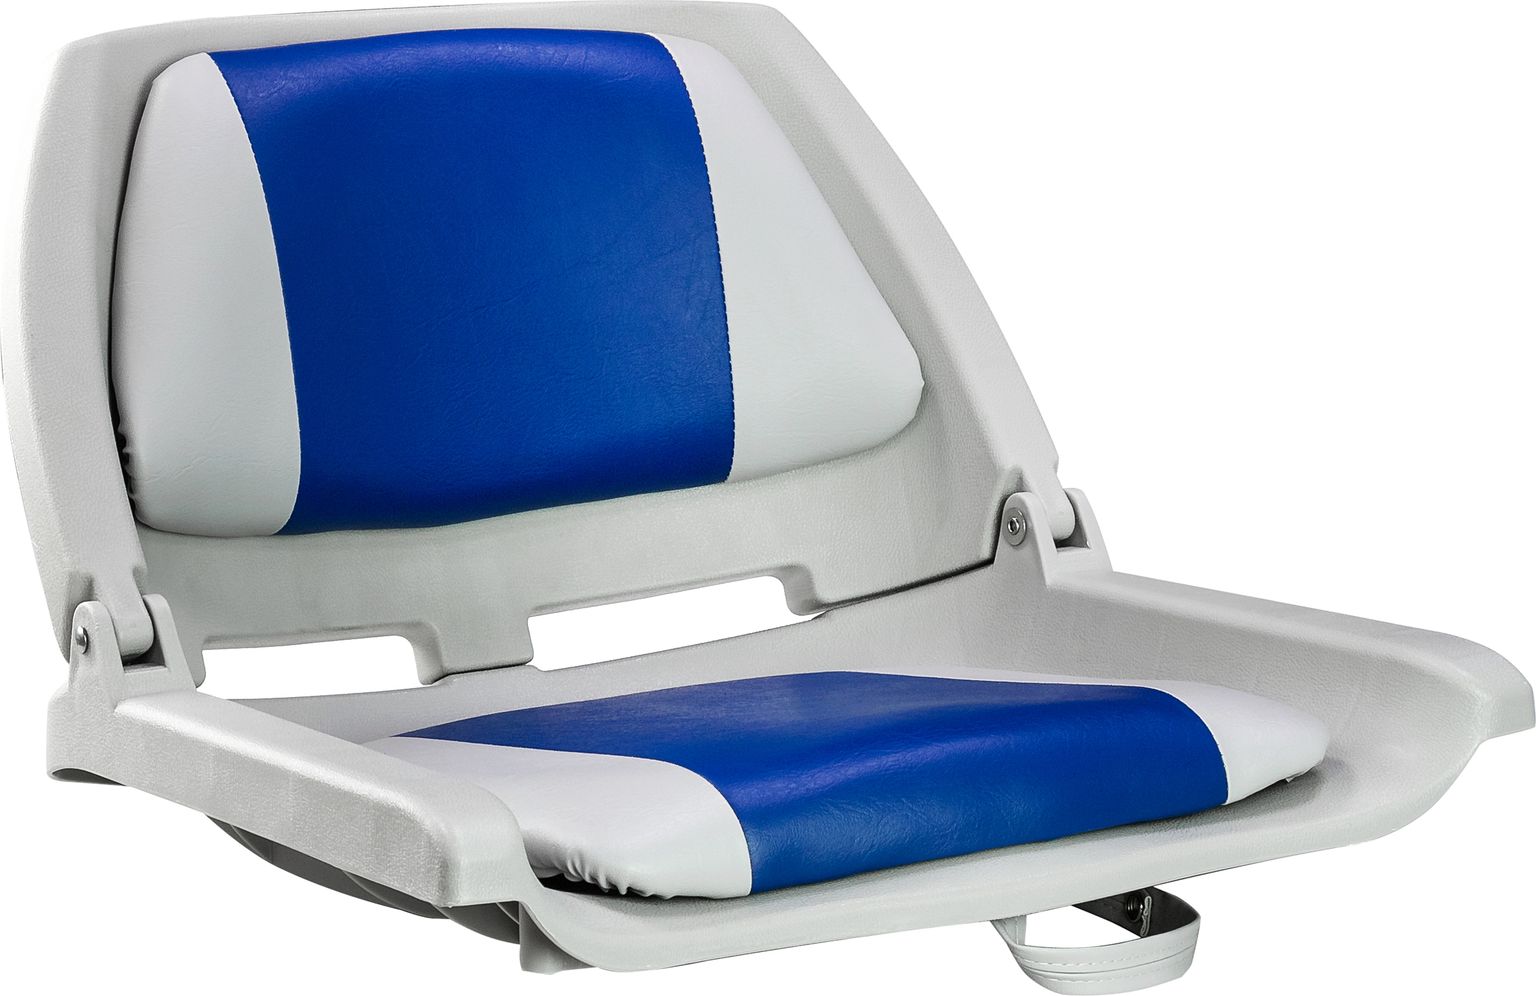 Кресло мягкое складное, обивка винил, цвет серый/синий, Marine Rocket 75109GB-MR кресло мягкое складное камуфляж осень marine rocket 75107max5 mr